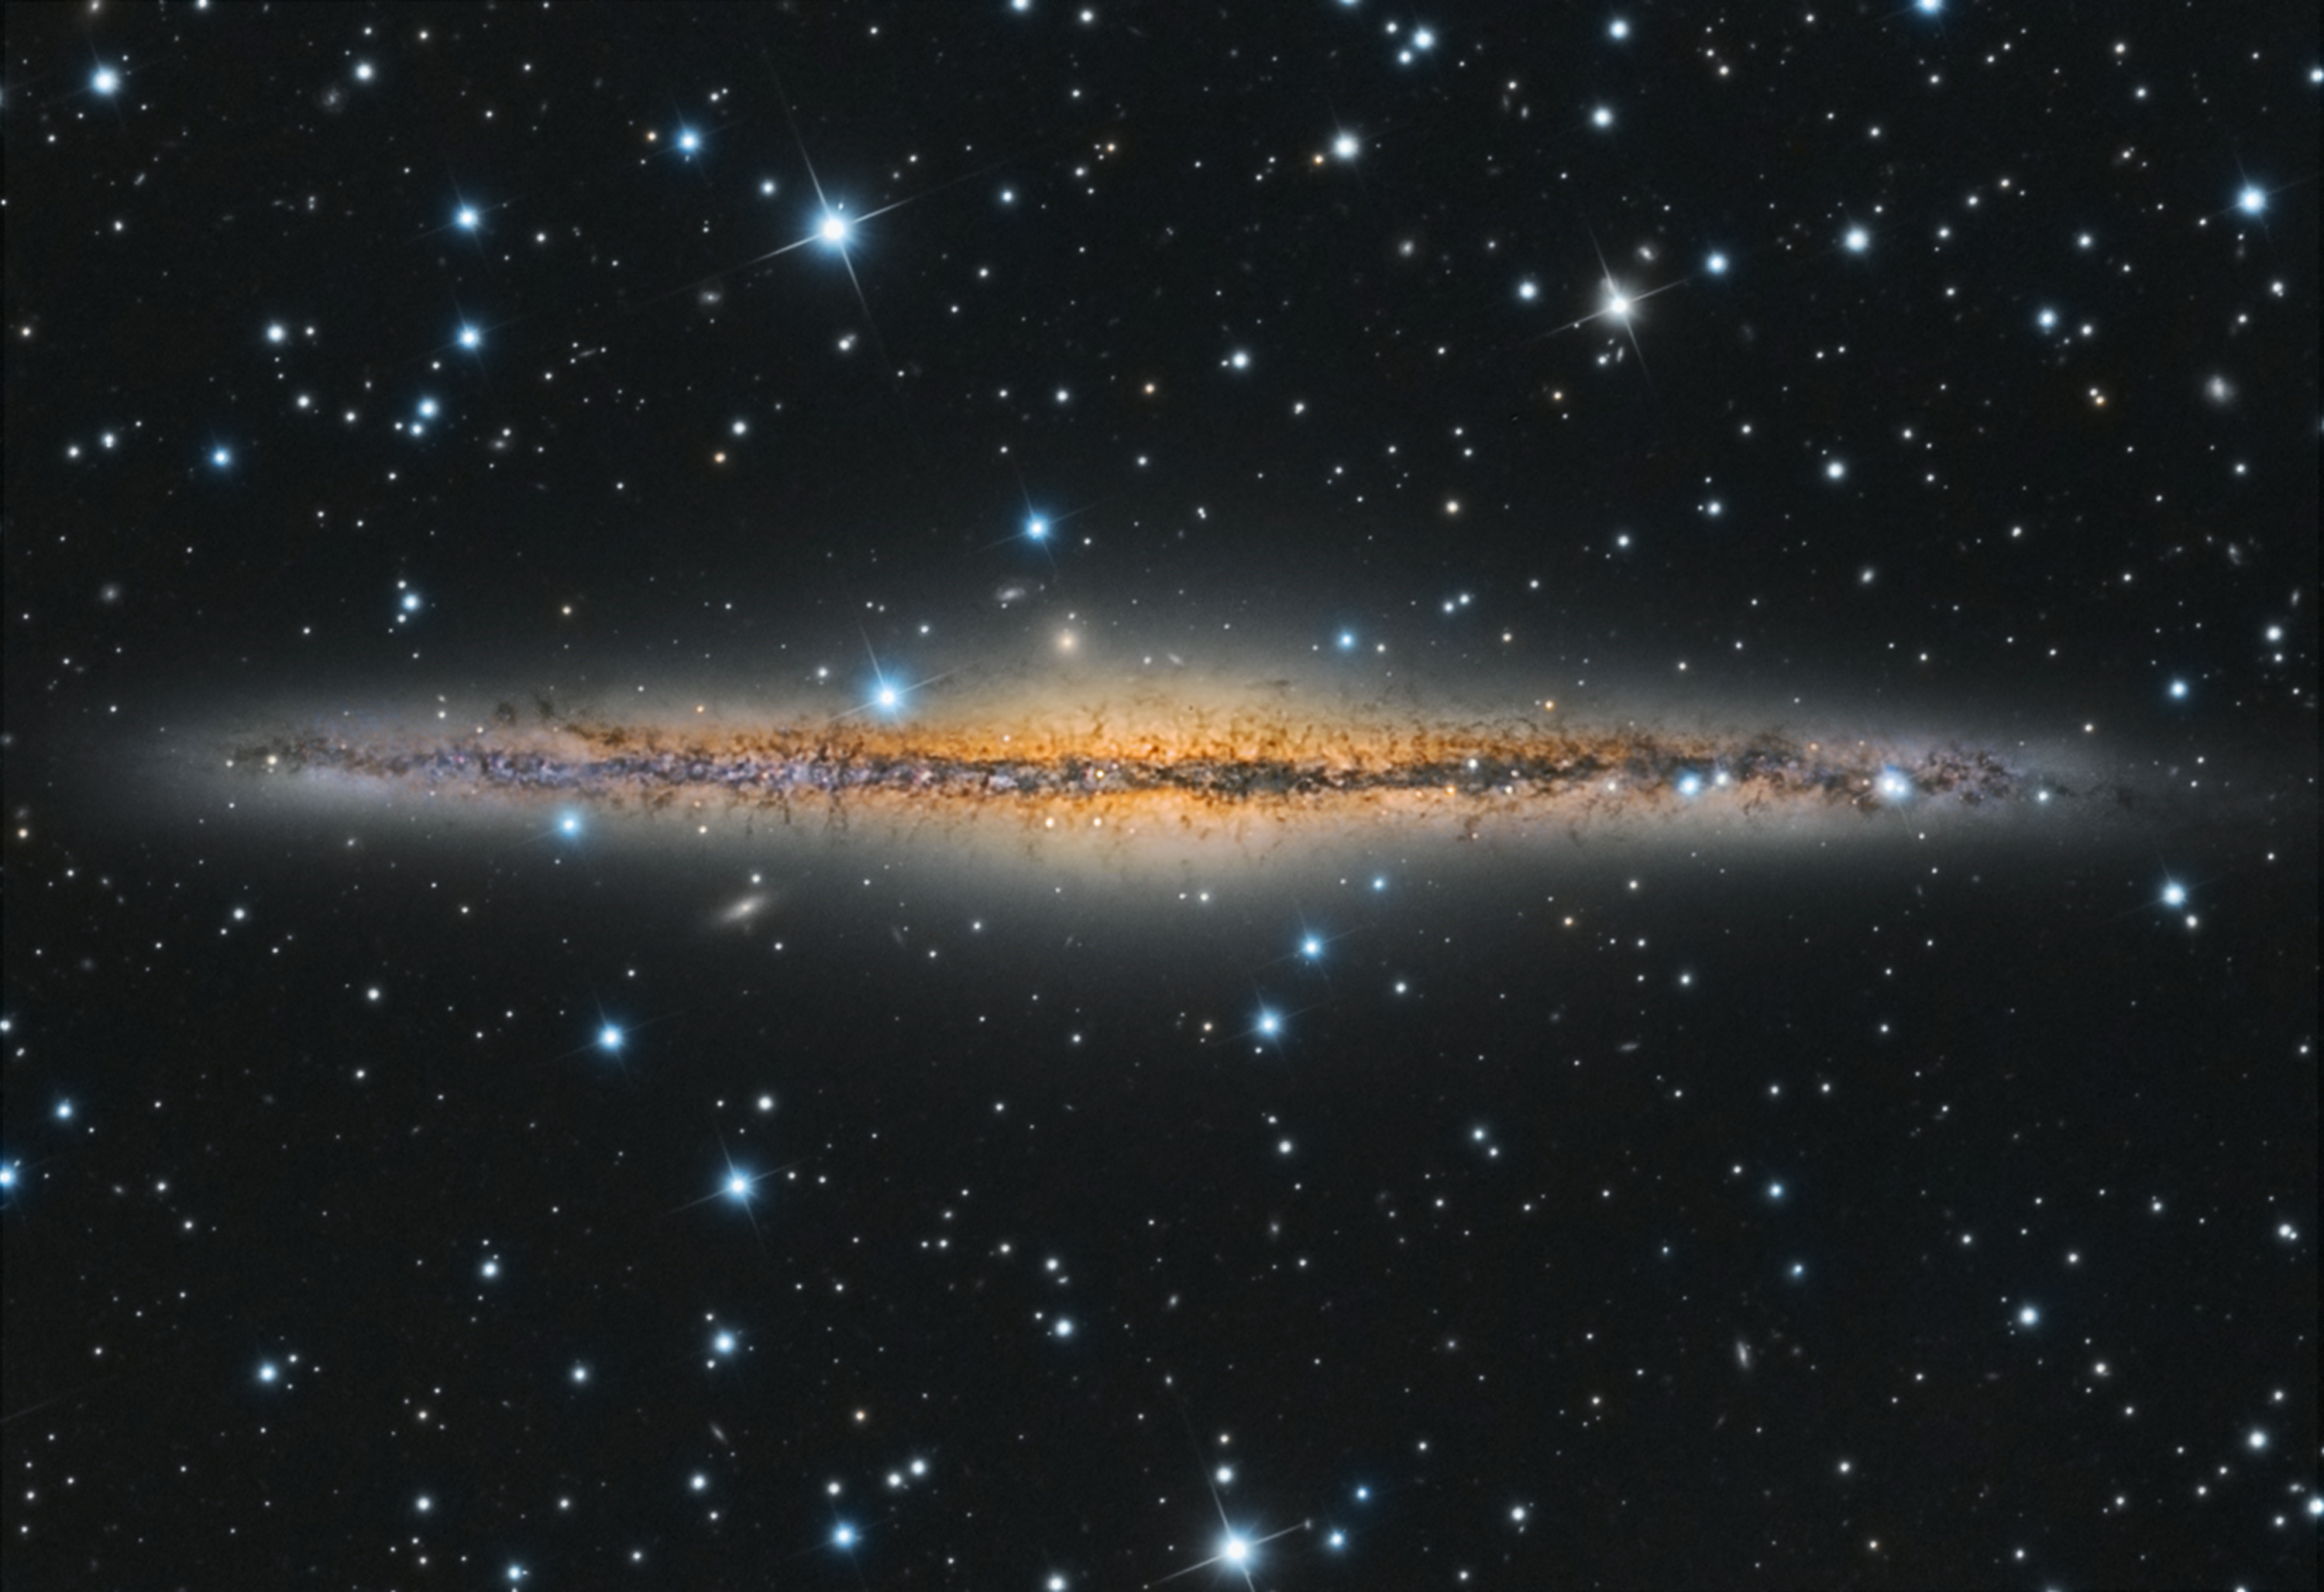 Edge On NGC 891